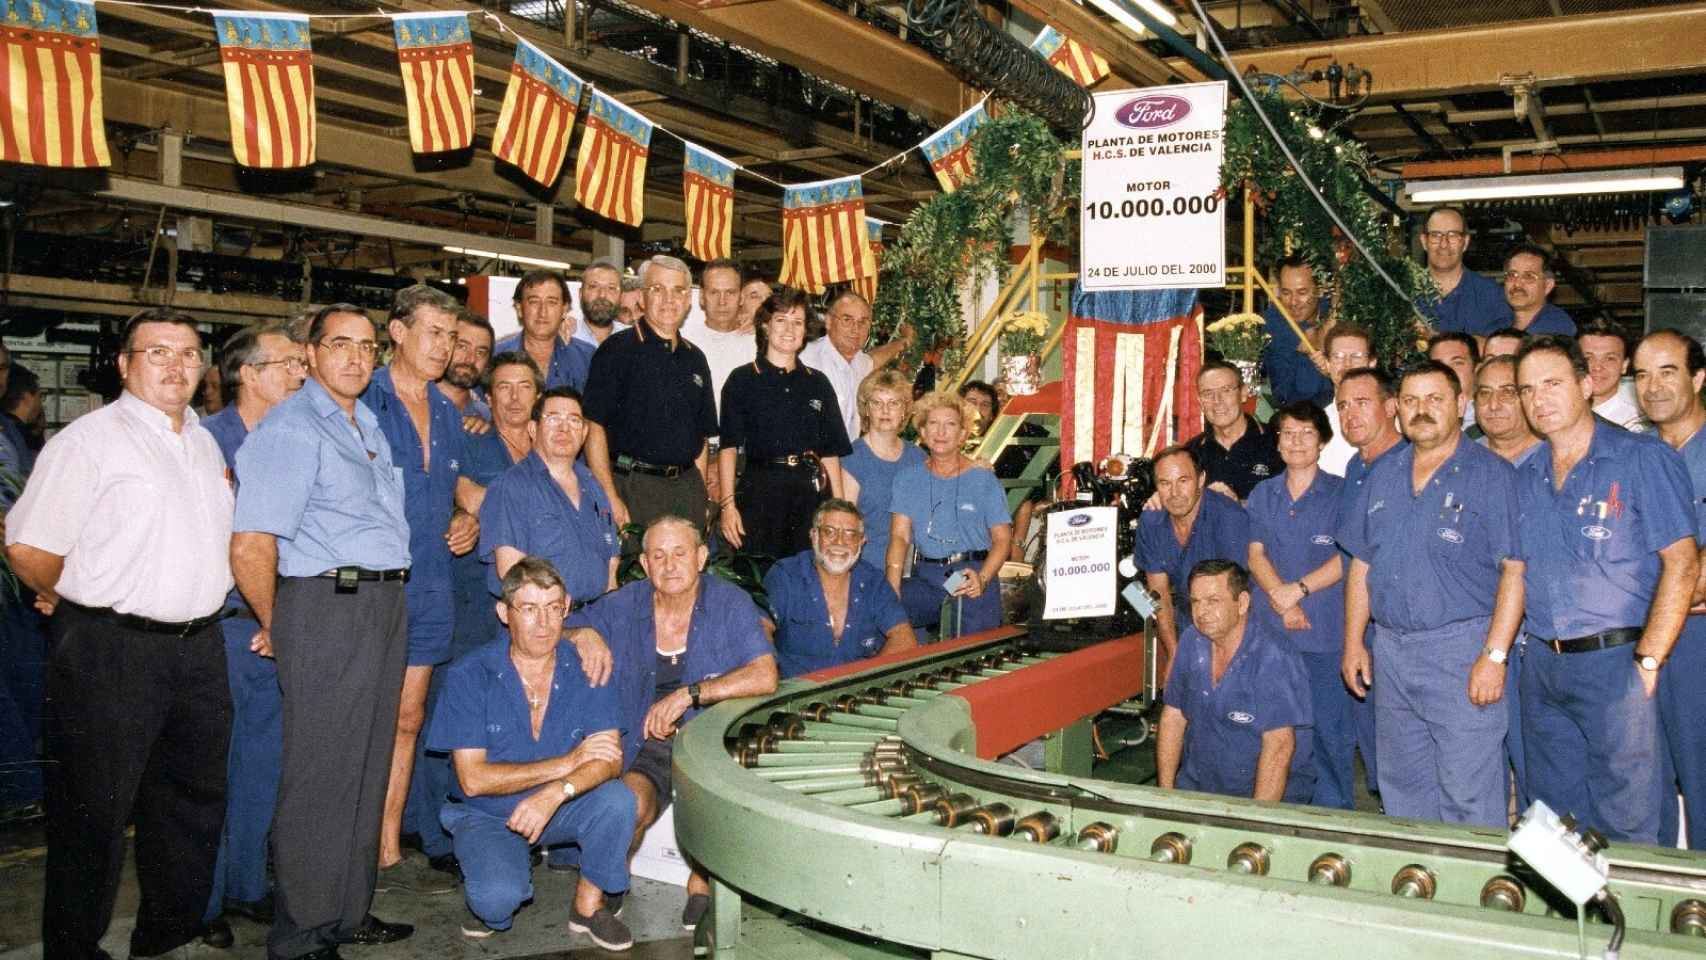 Foto conmemorativa del año 2000, cuando Ford alcanzó los 10 millones de motores fabricados en Almussafes. EE